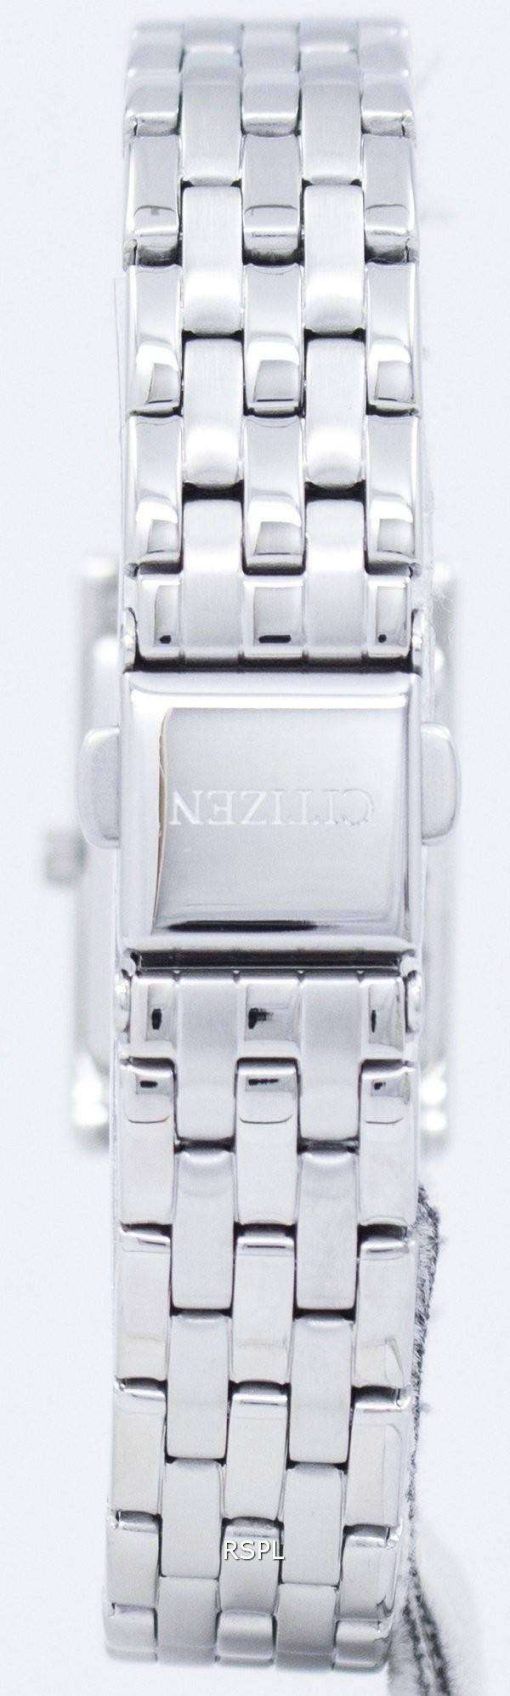 シチズンクォーツ アナログ EJ6120 54 a レディース腕時計